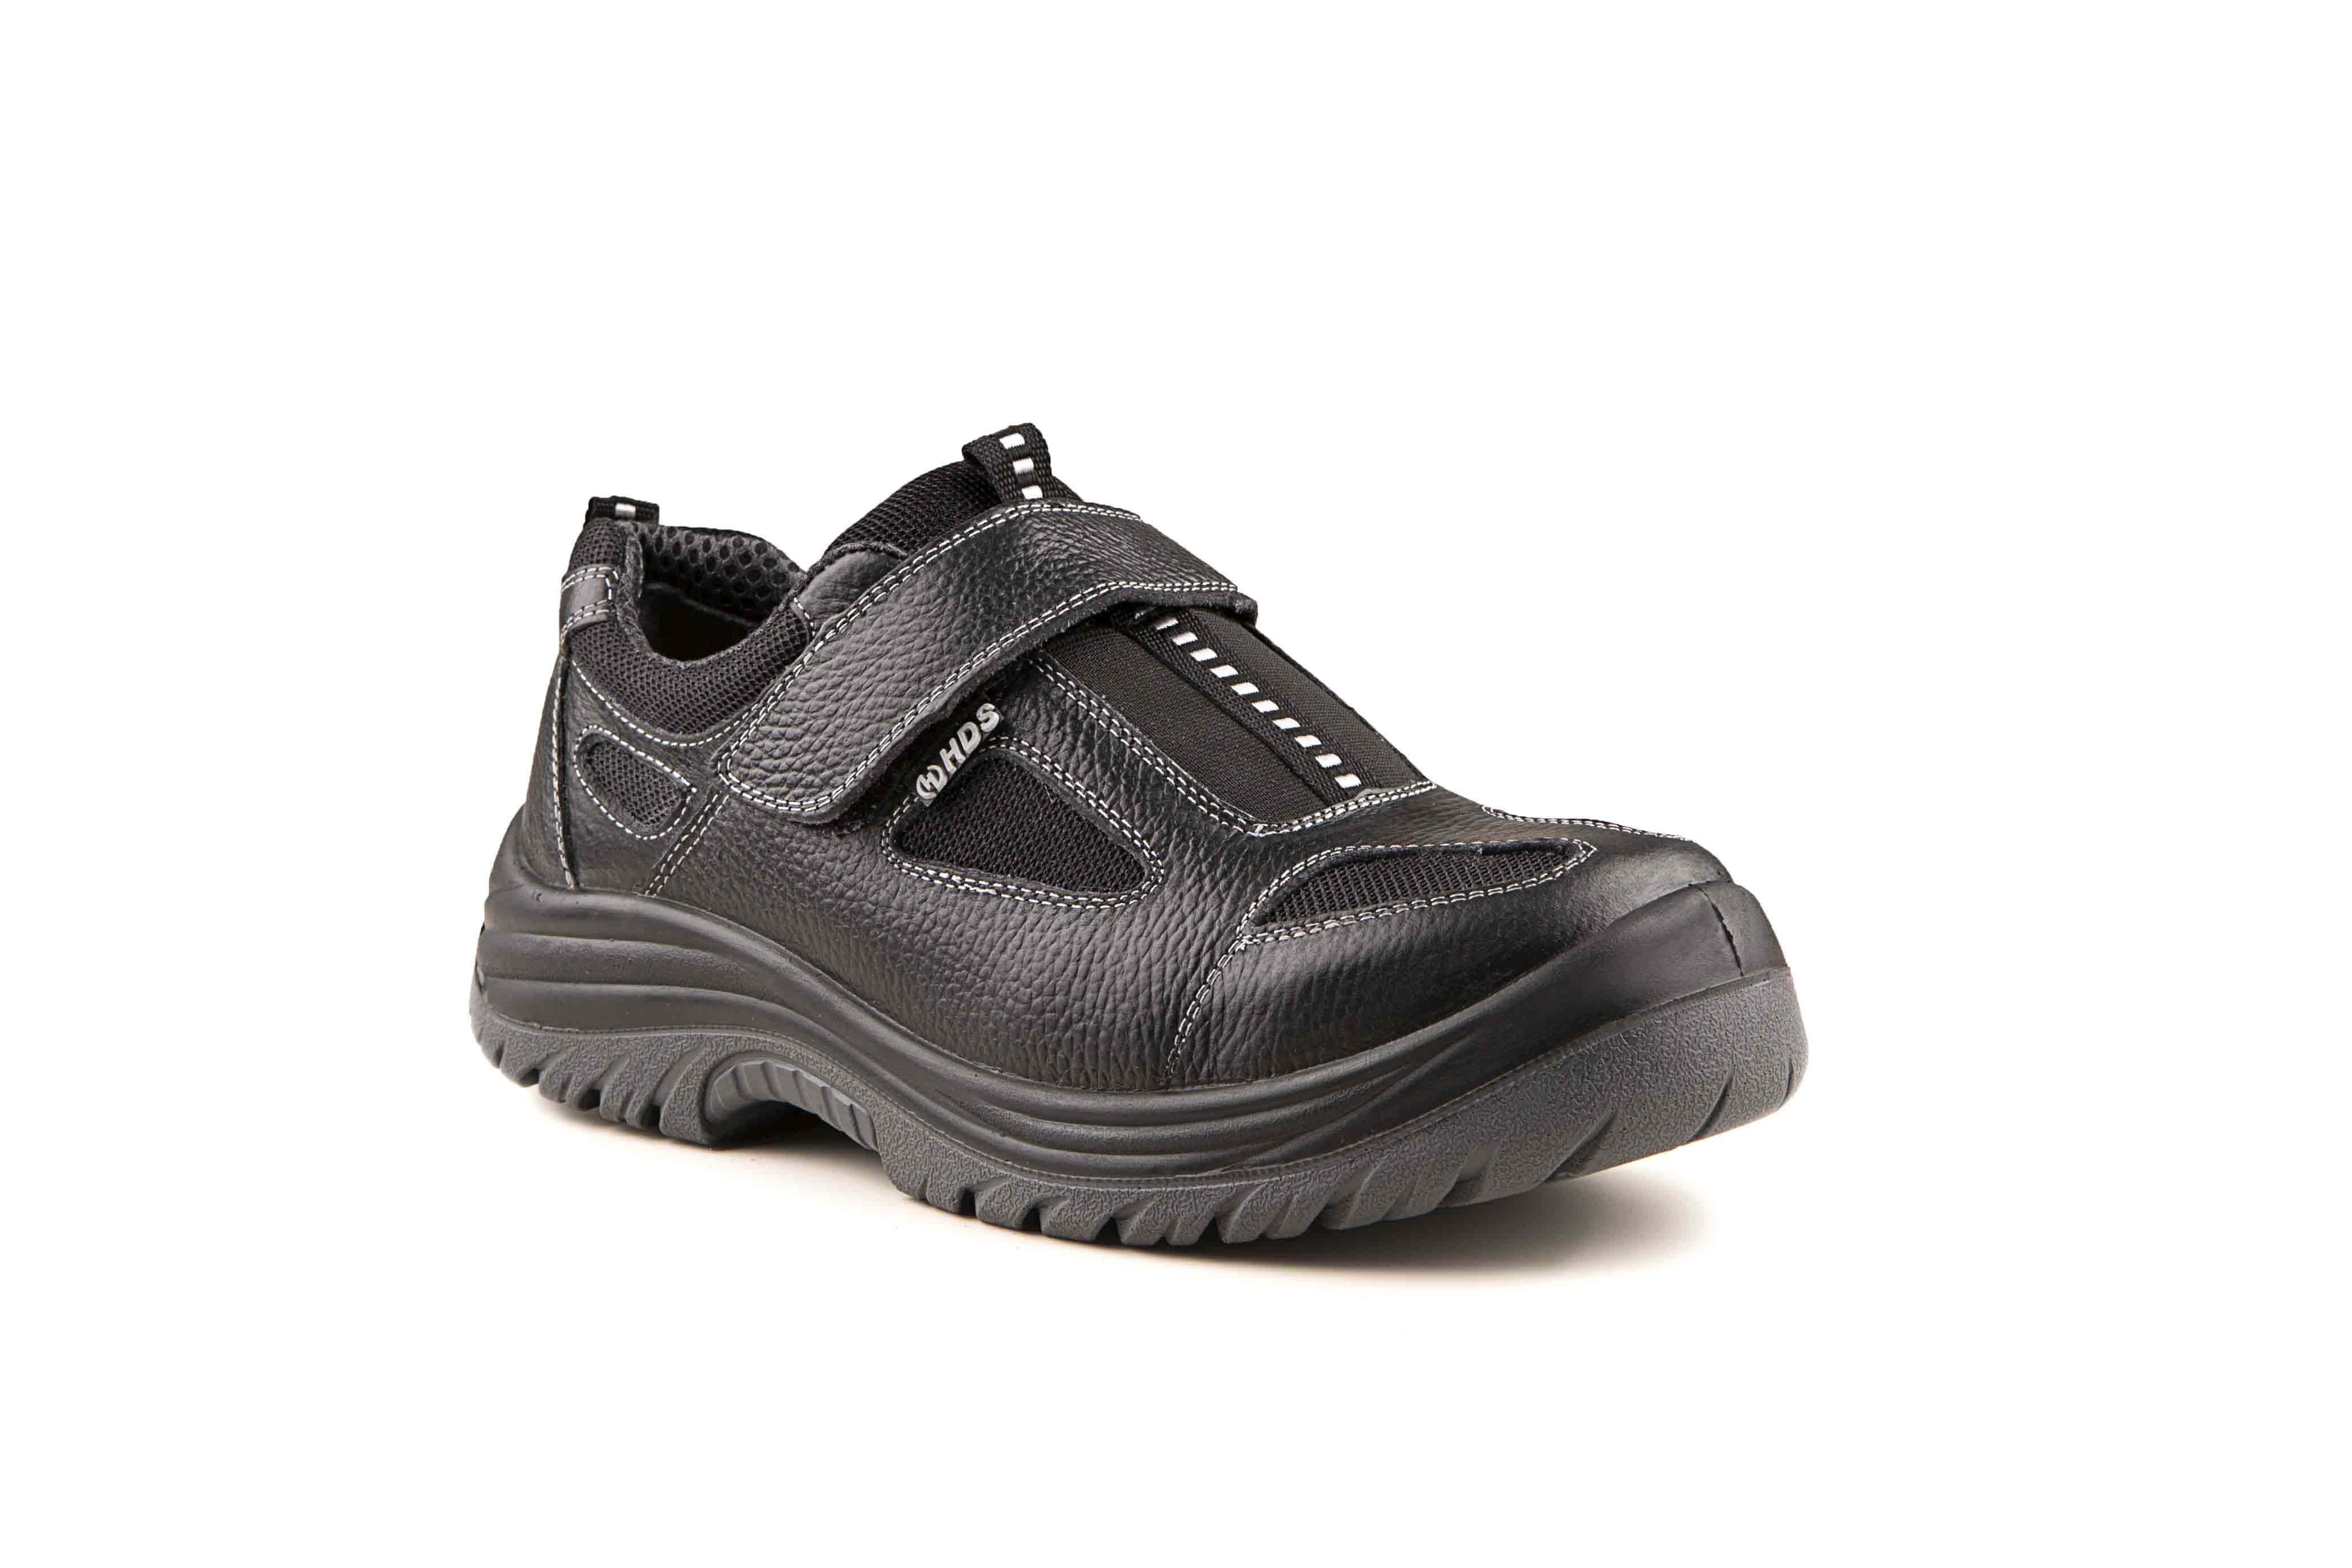 HDS İş Güvenlik Ayakkabıları, 2012 Modeli